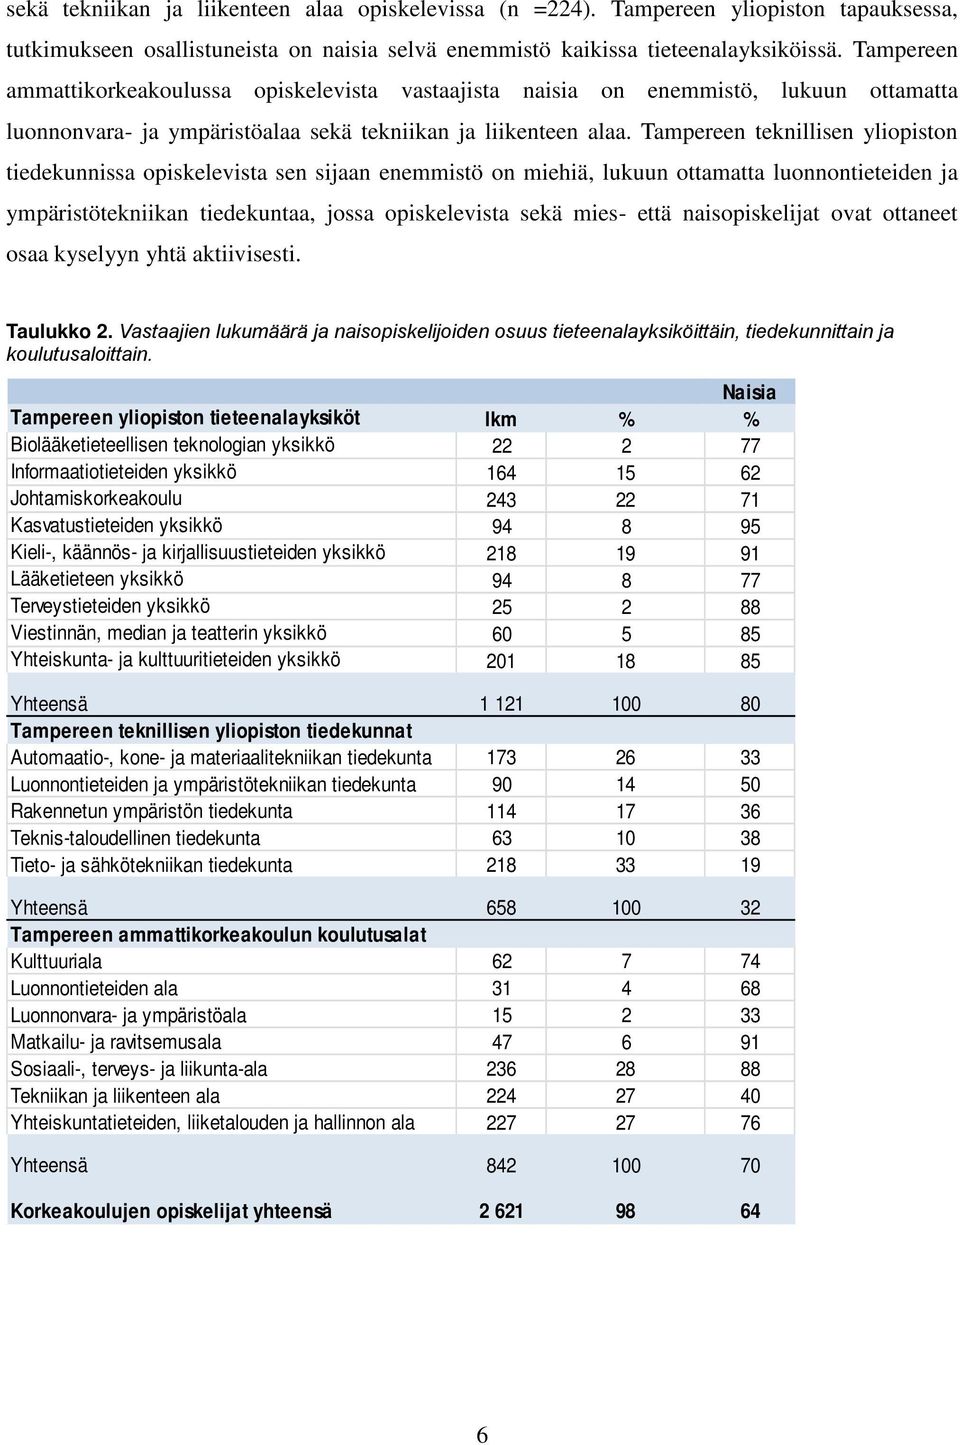 Tampereen teknillisen yliopiston tiedekunnissa opiskelevista sen sijaan enemmistö on miehiä, lukuun ottamatta luonnontieteiden ja ympäristötekniikan tiedekuntaa, jossa opiskelevista sekä mies- että